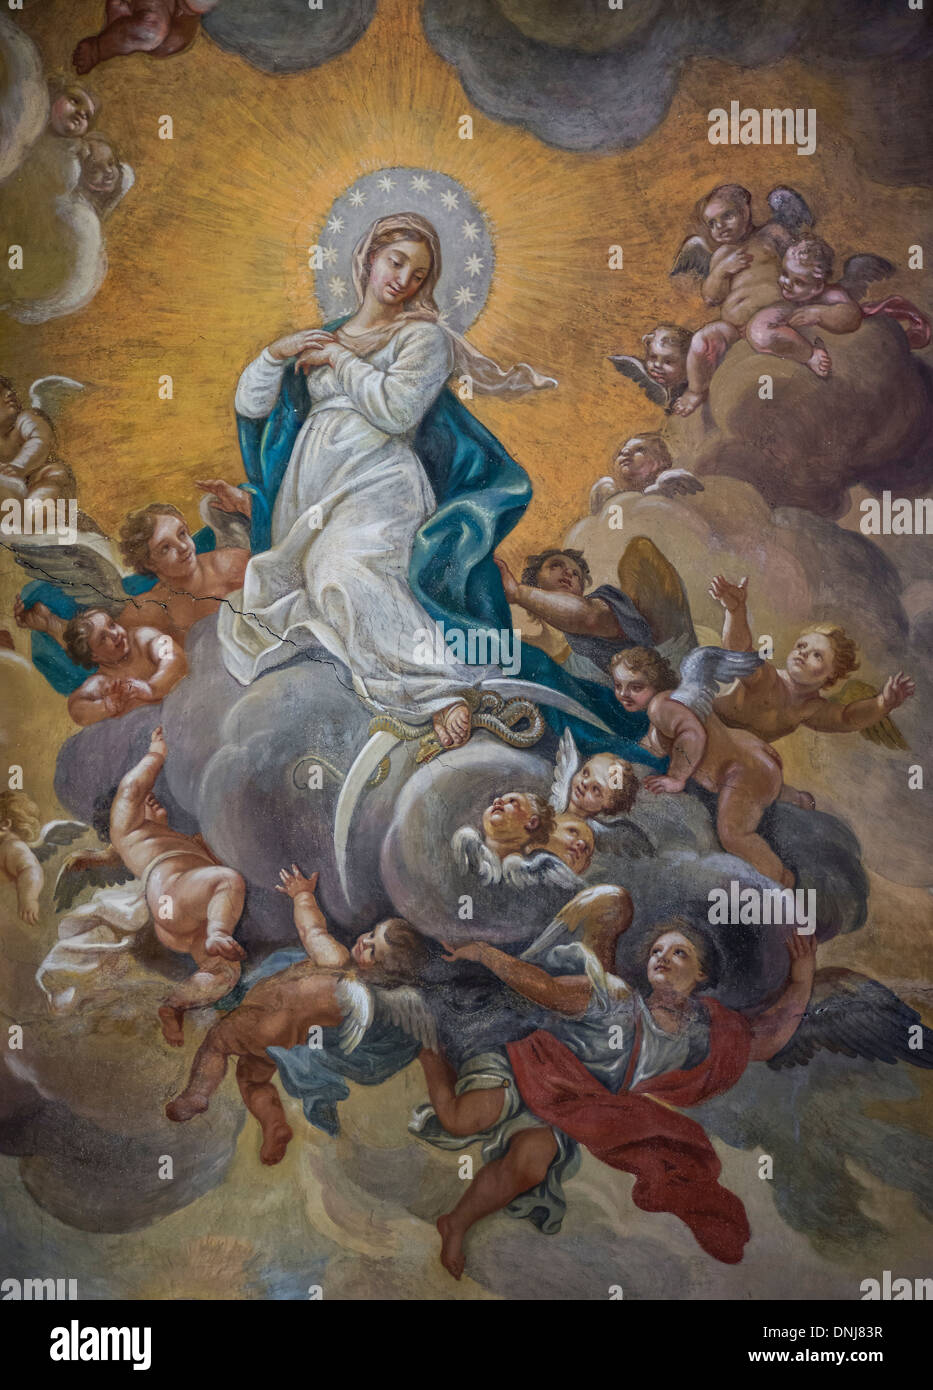 Techo fresco de la Asunción, Santa Maria Maddalena, Roma, Italia Foto de stock